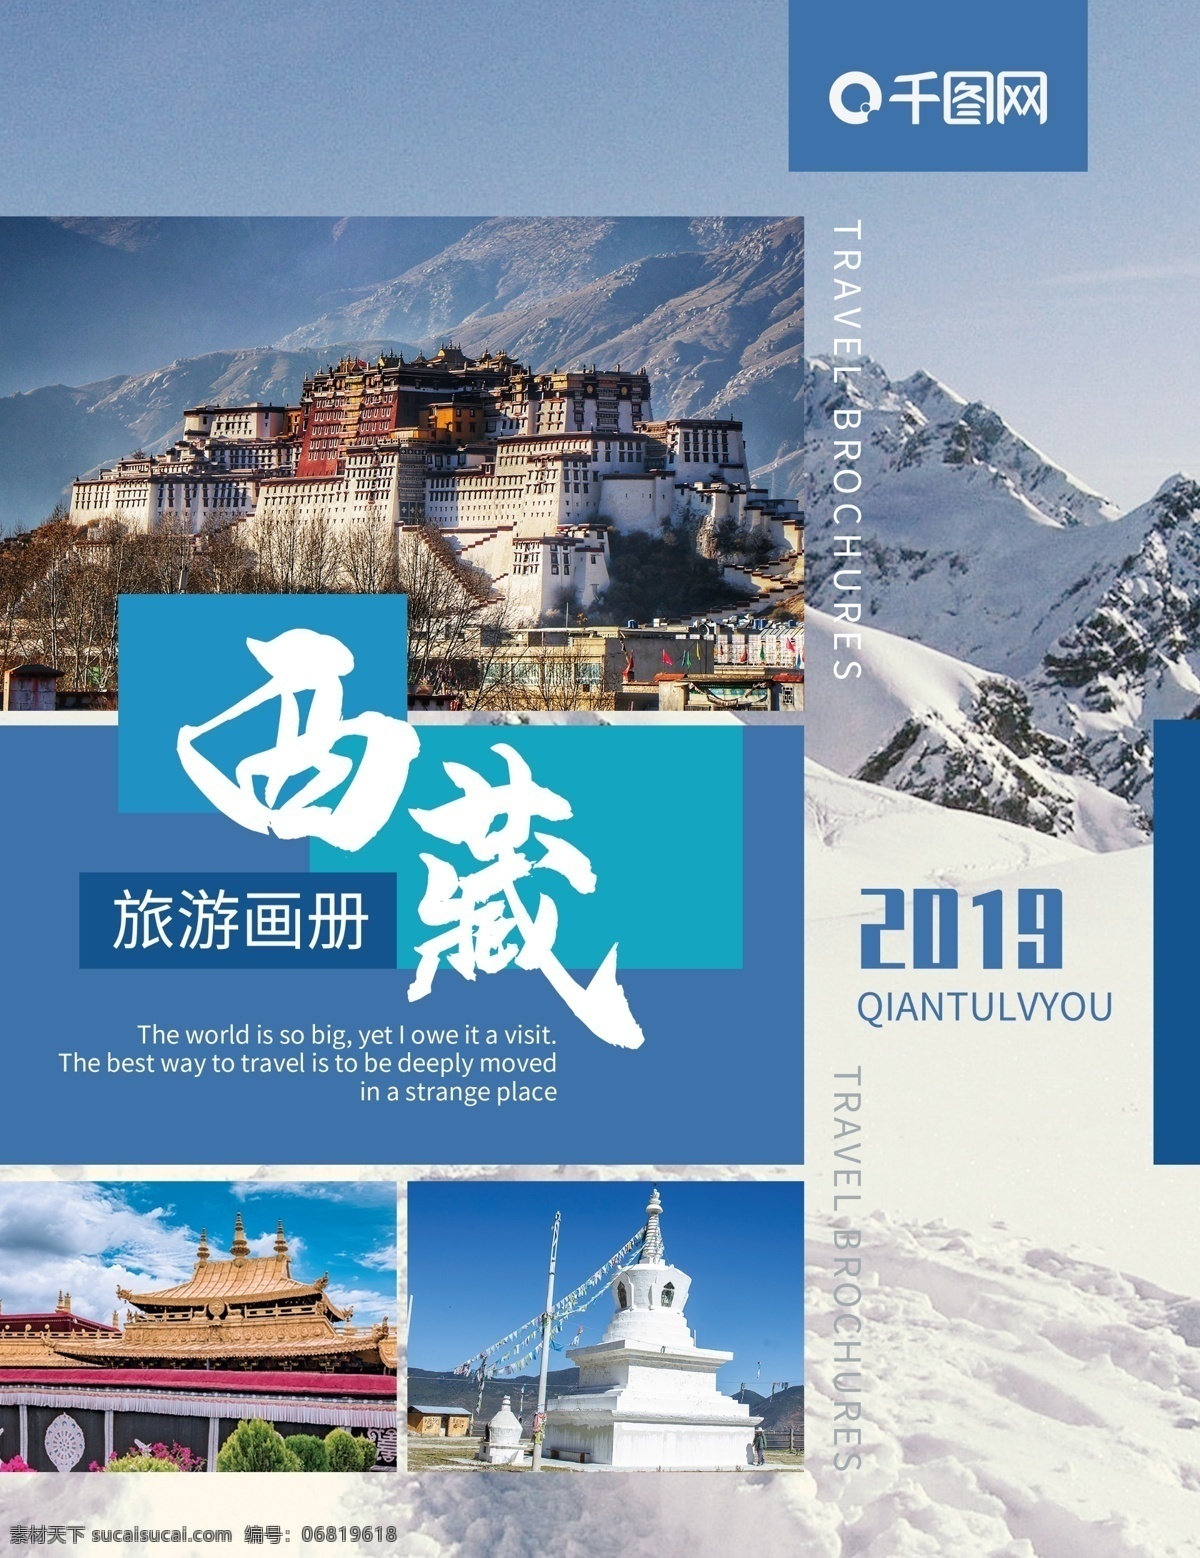 西藏旅游 宣传 纪念 画册 封面 西藏 布达拉宫 大昭寺 白塔 旅游 旅行 宣传册 纪念册